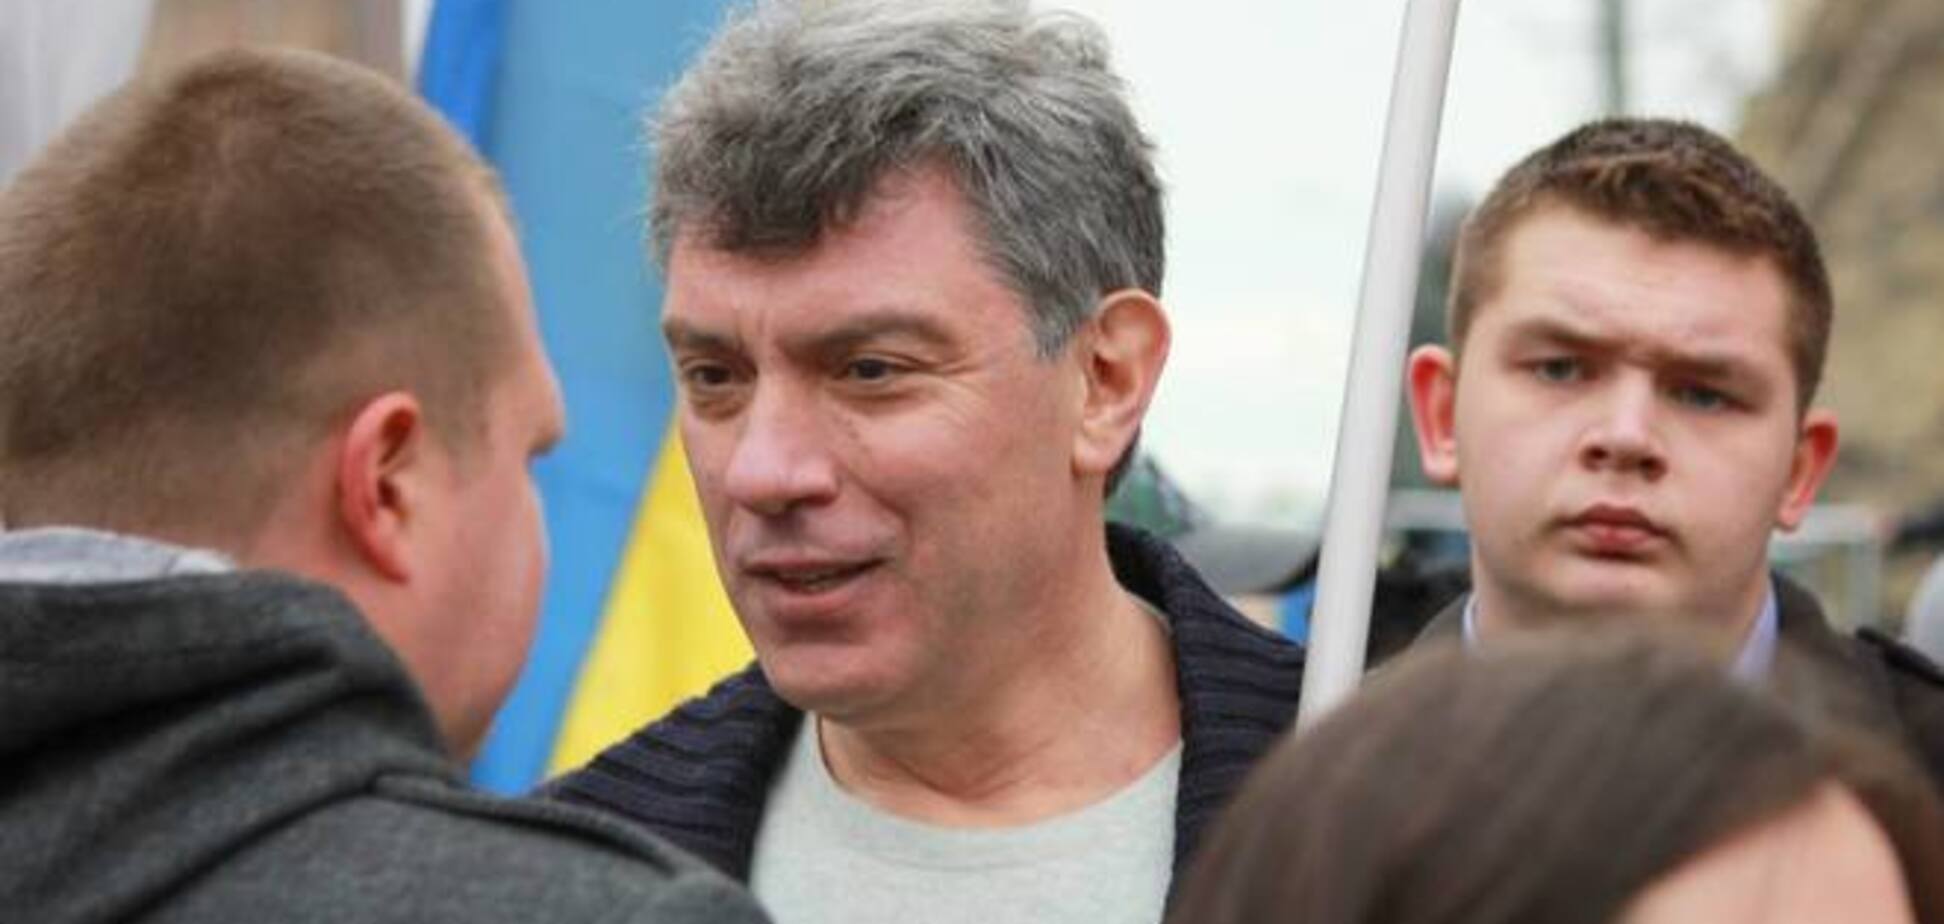 Немцов сравнил Путина с 'загнанной в угол крысой'